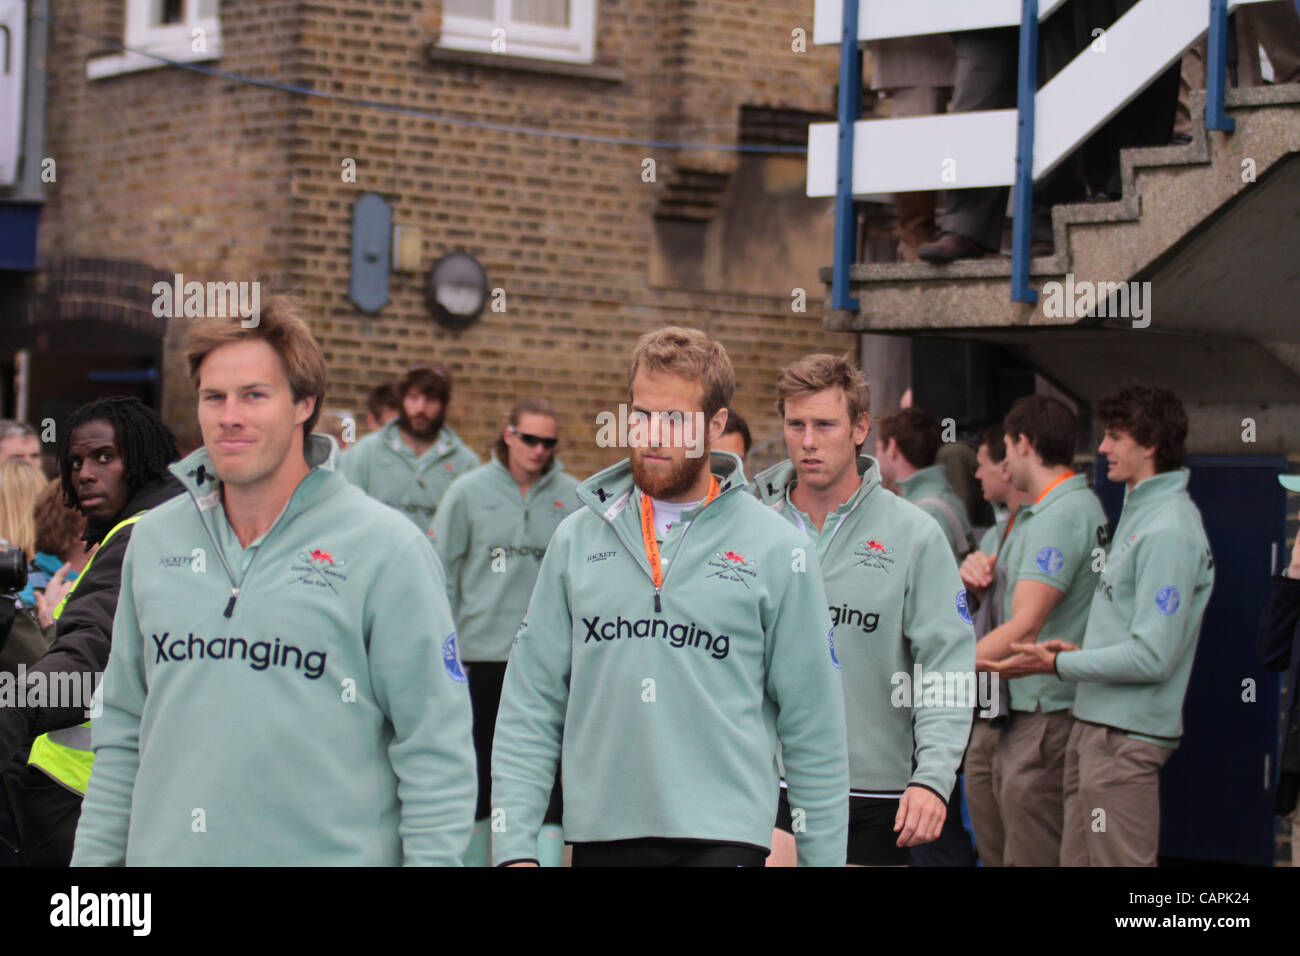 London, UK, Samstag 7. April 2012.The Cambridge Rudern Team (im Bild) an der Xchanging Oxford & Universität Cambridge Boat Race auf der Themse. Stockfoto